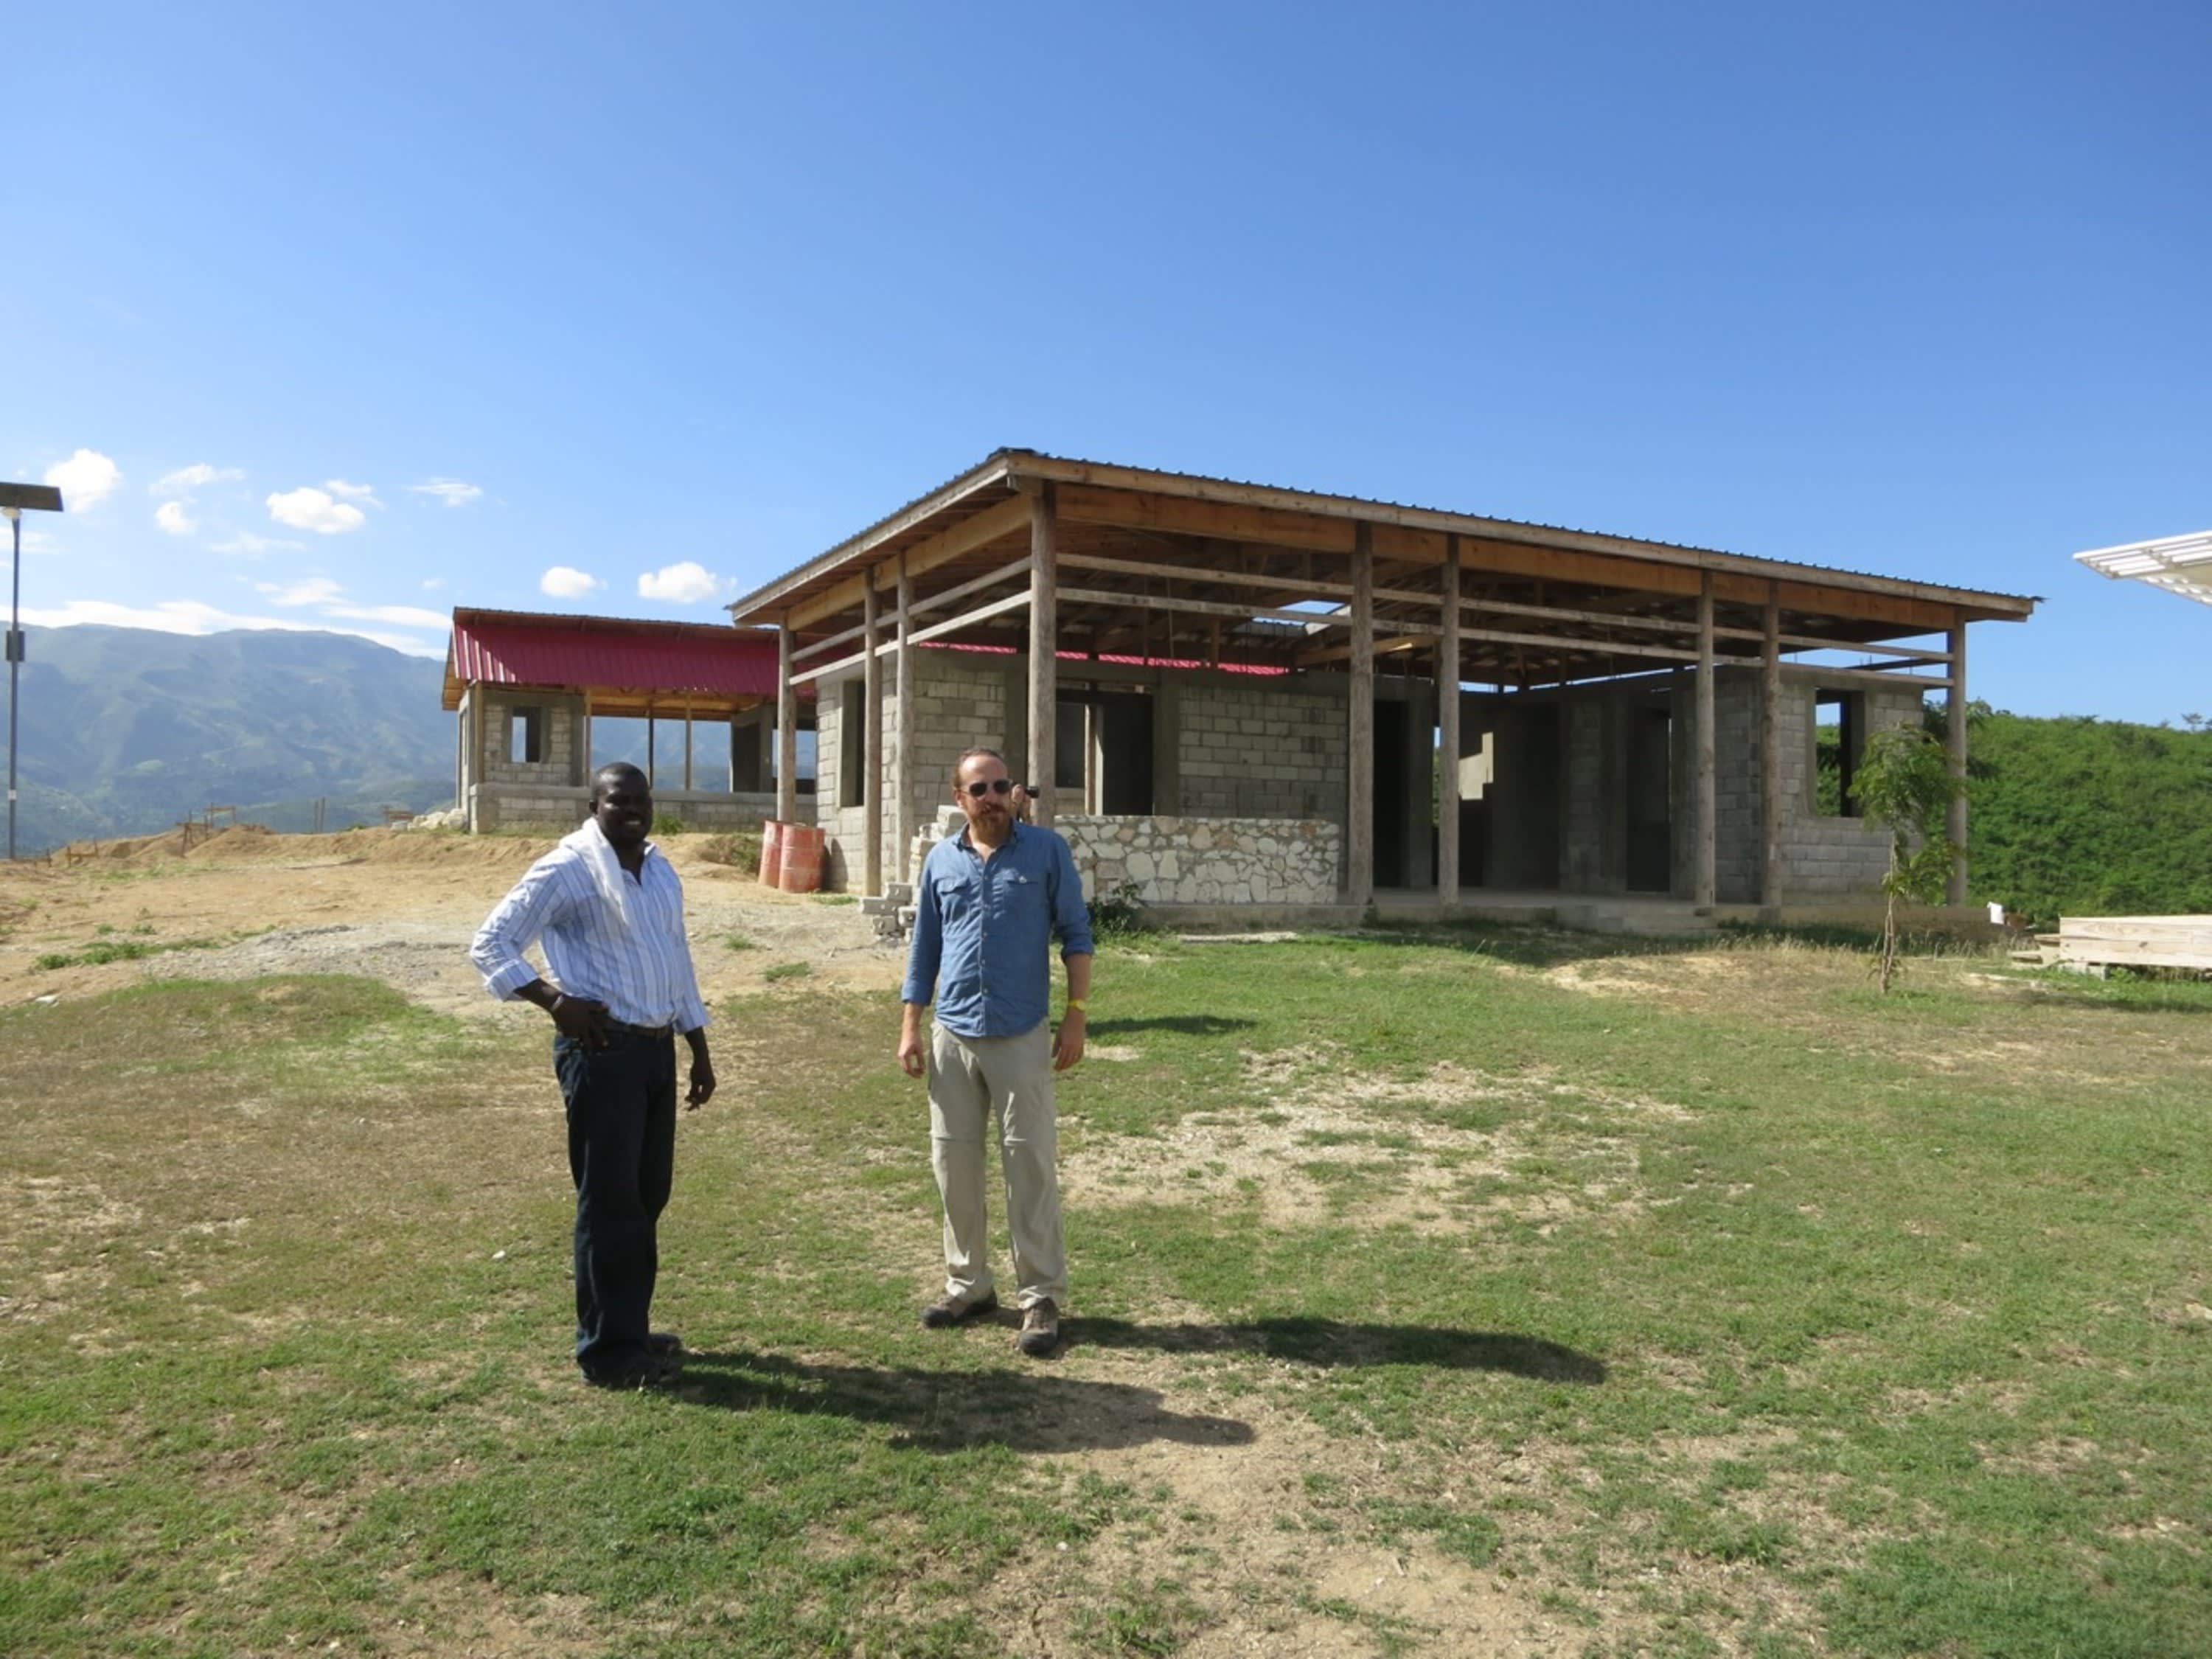 In Haiti, Archive Houses Aim to Curb Disease Through Design